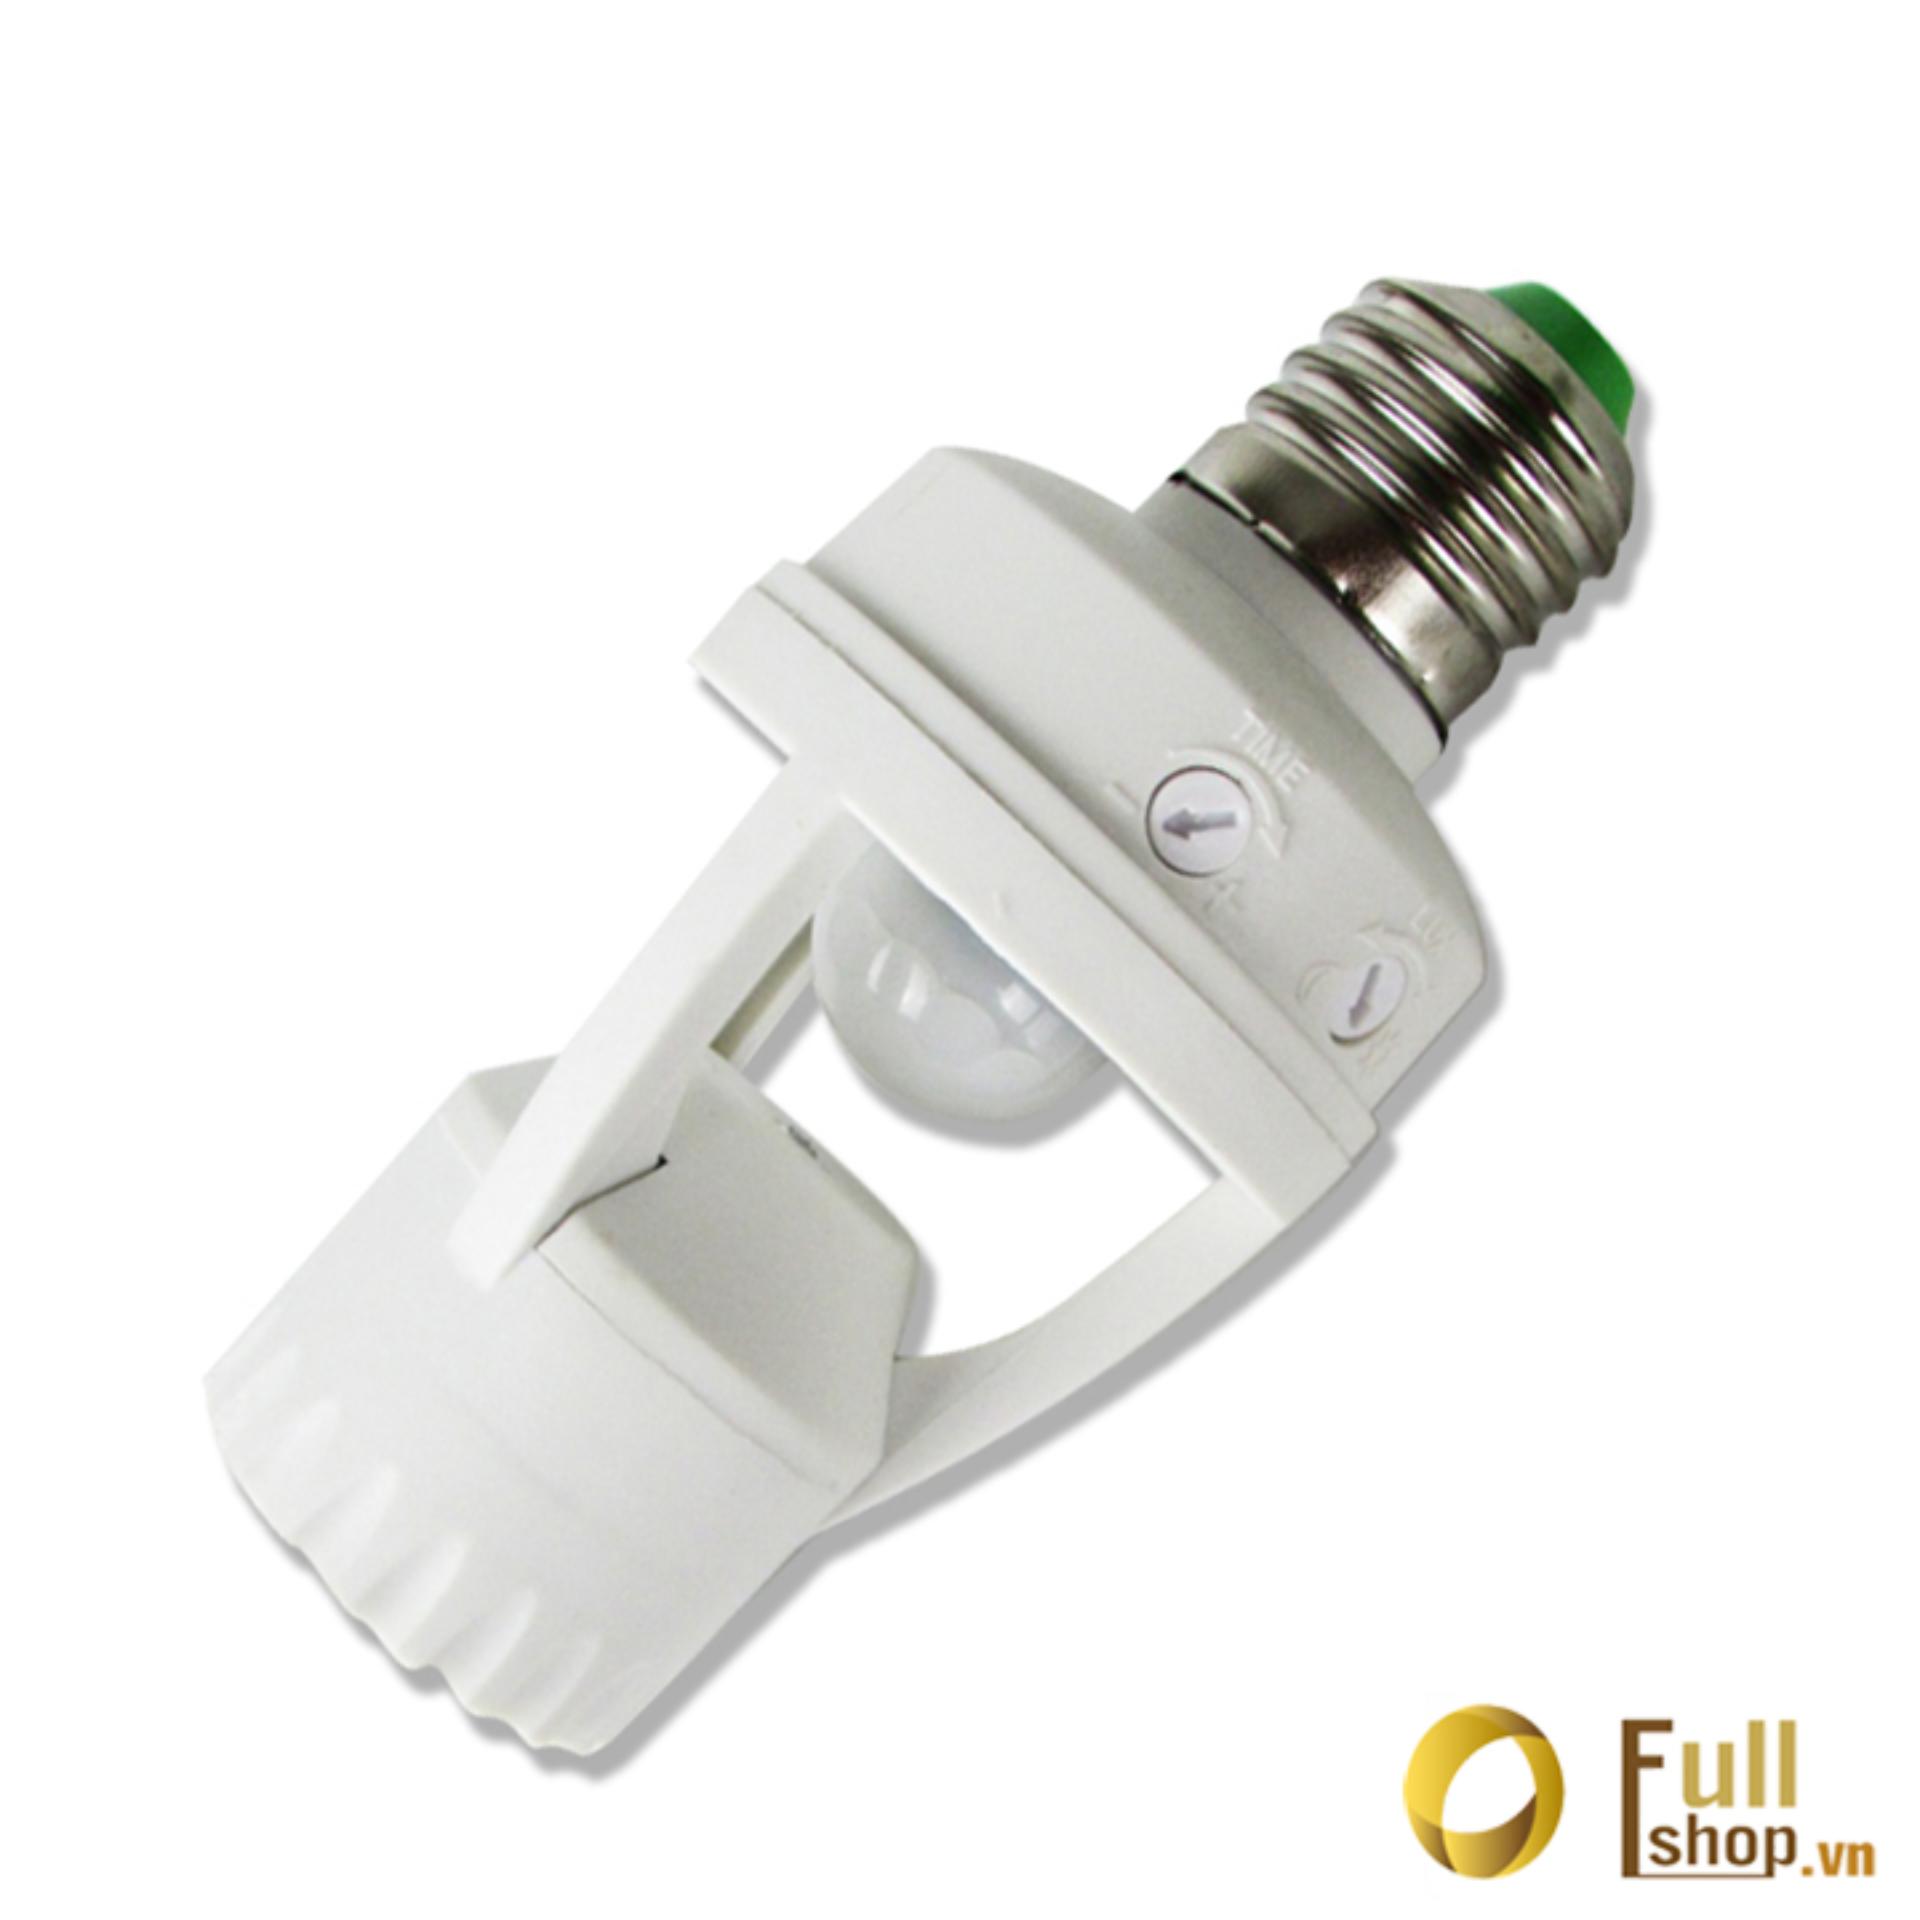 Đui đèn cảm ứng hồng ngoại lắp đui có sẵn đèn tự phát sáng khi có người chuyển động tới Kawa SE27